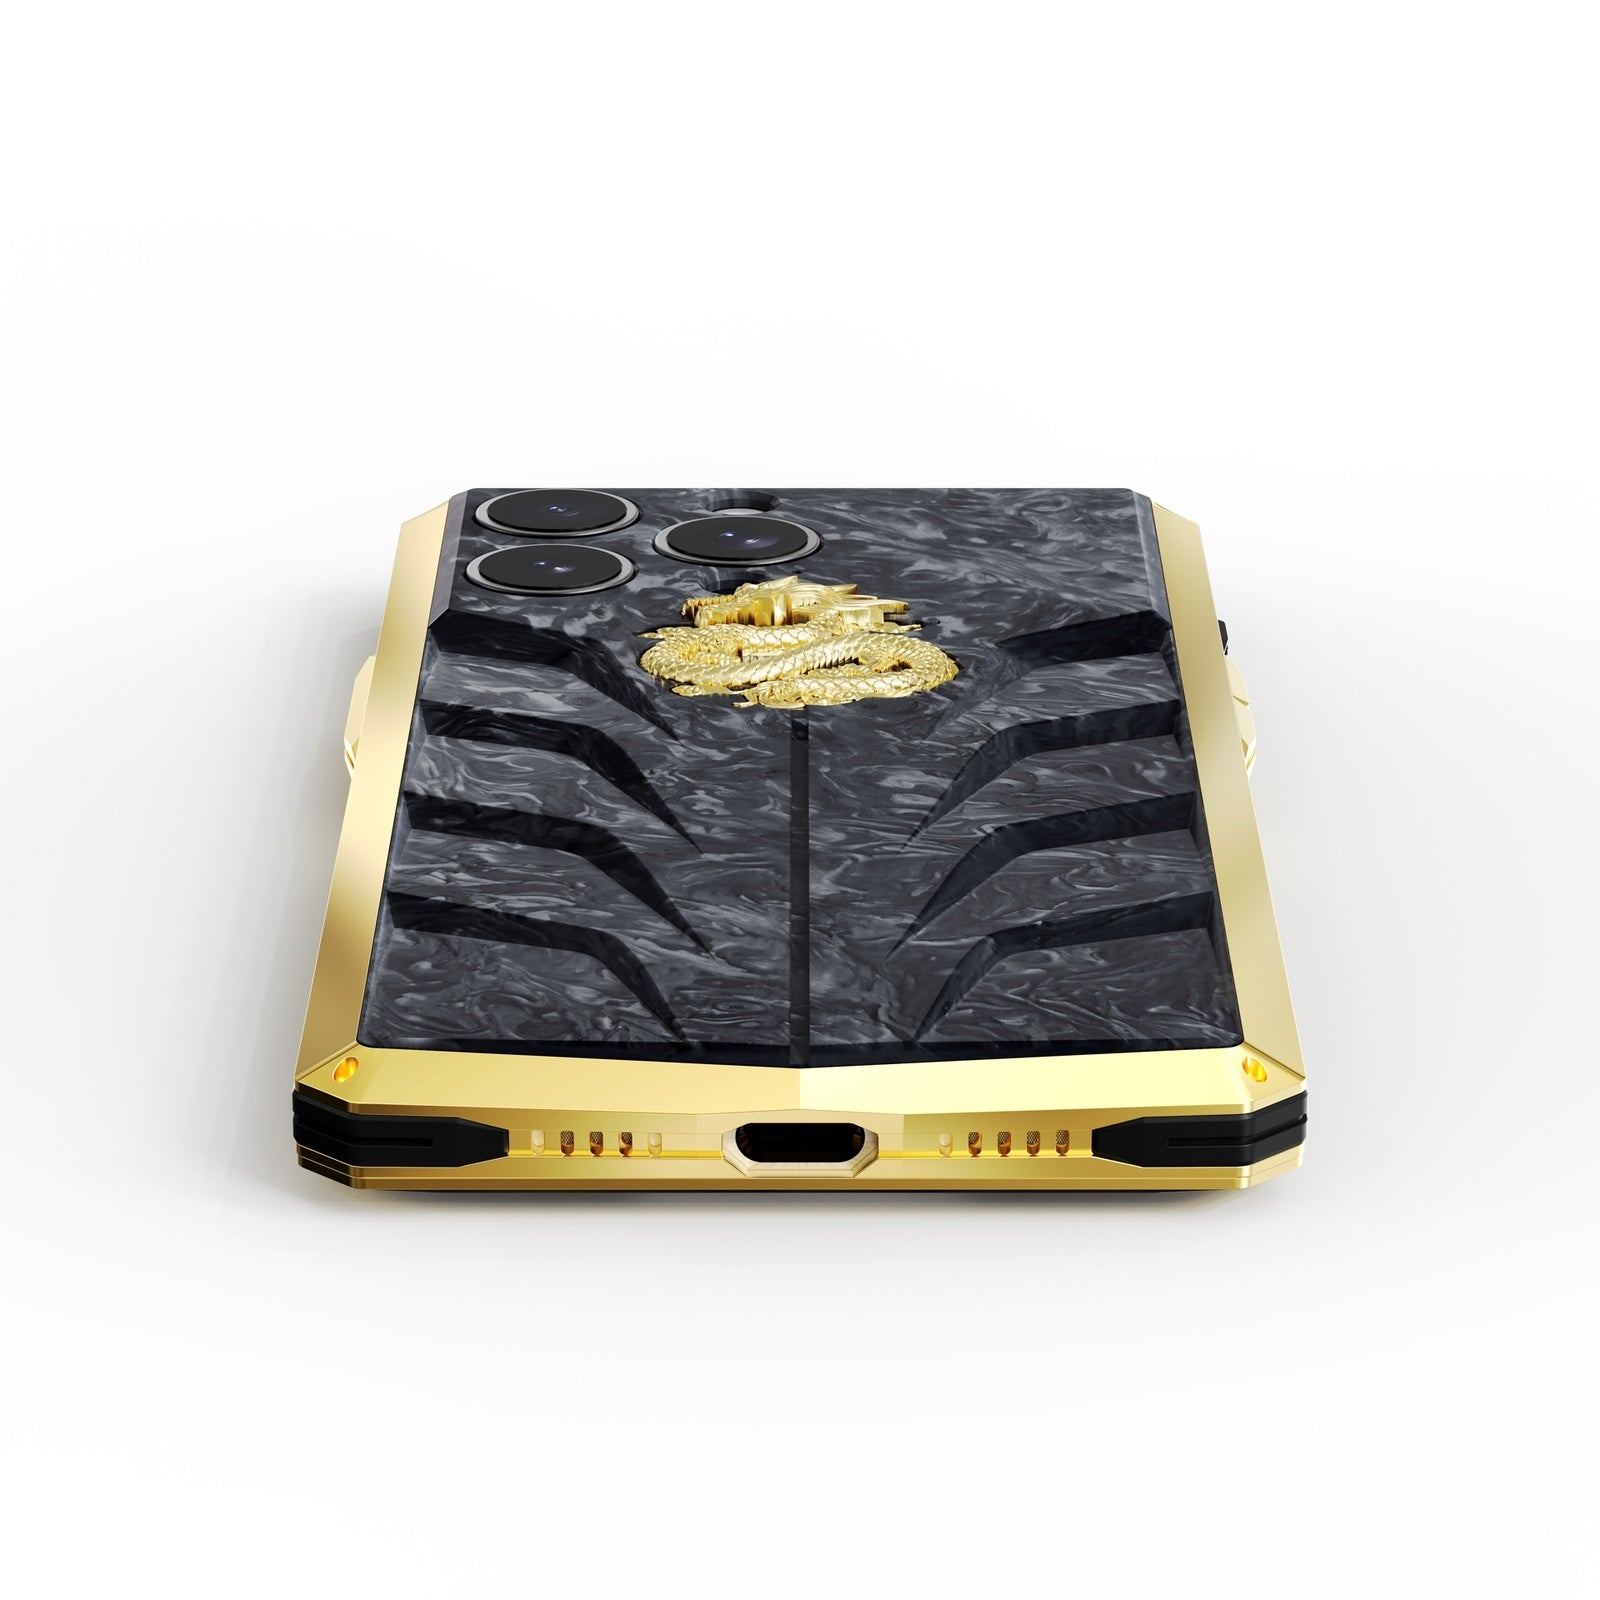 金色概念 - iPhone 15 手機殼 - RSC15 - 金龍